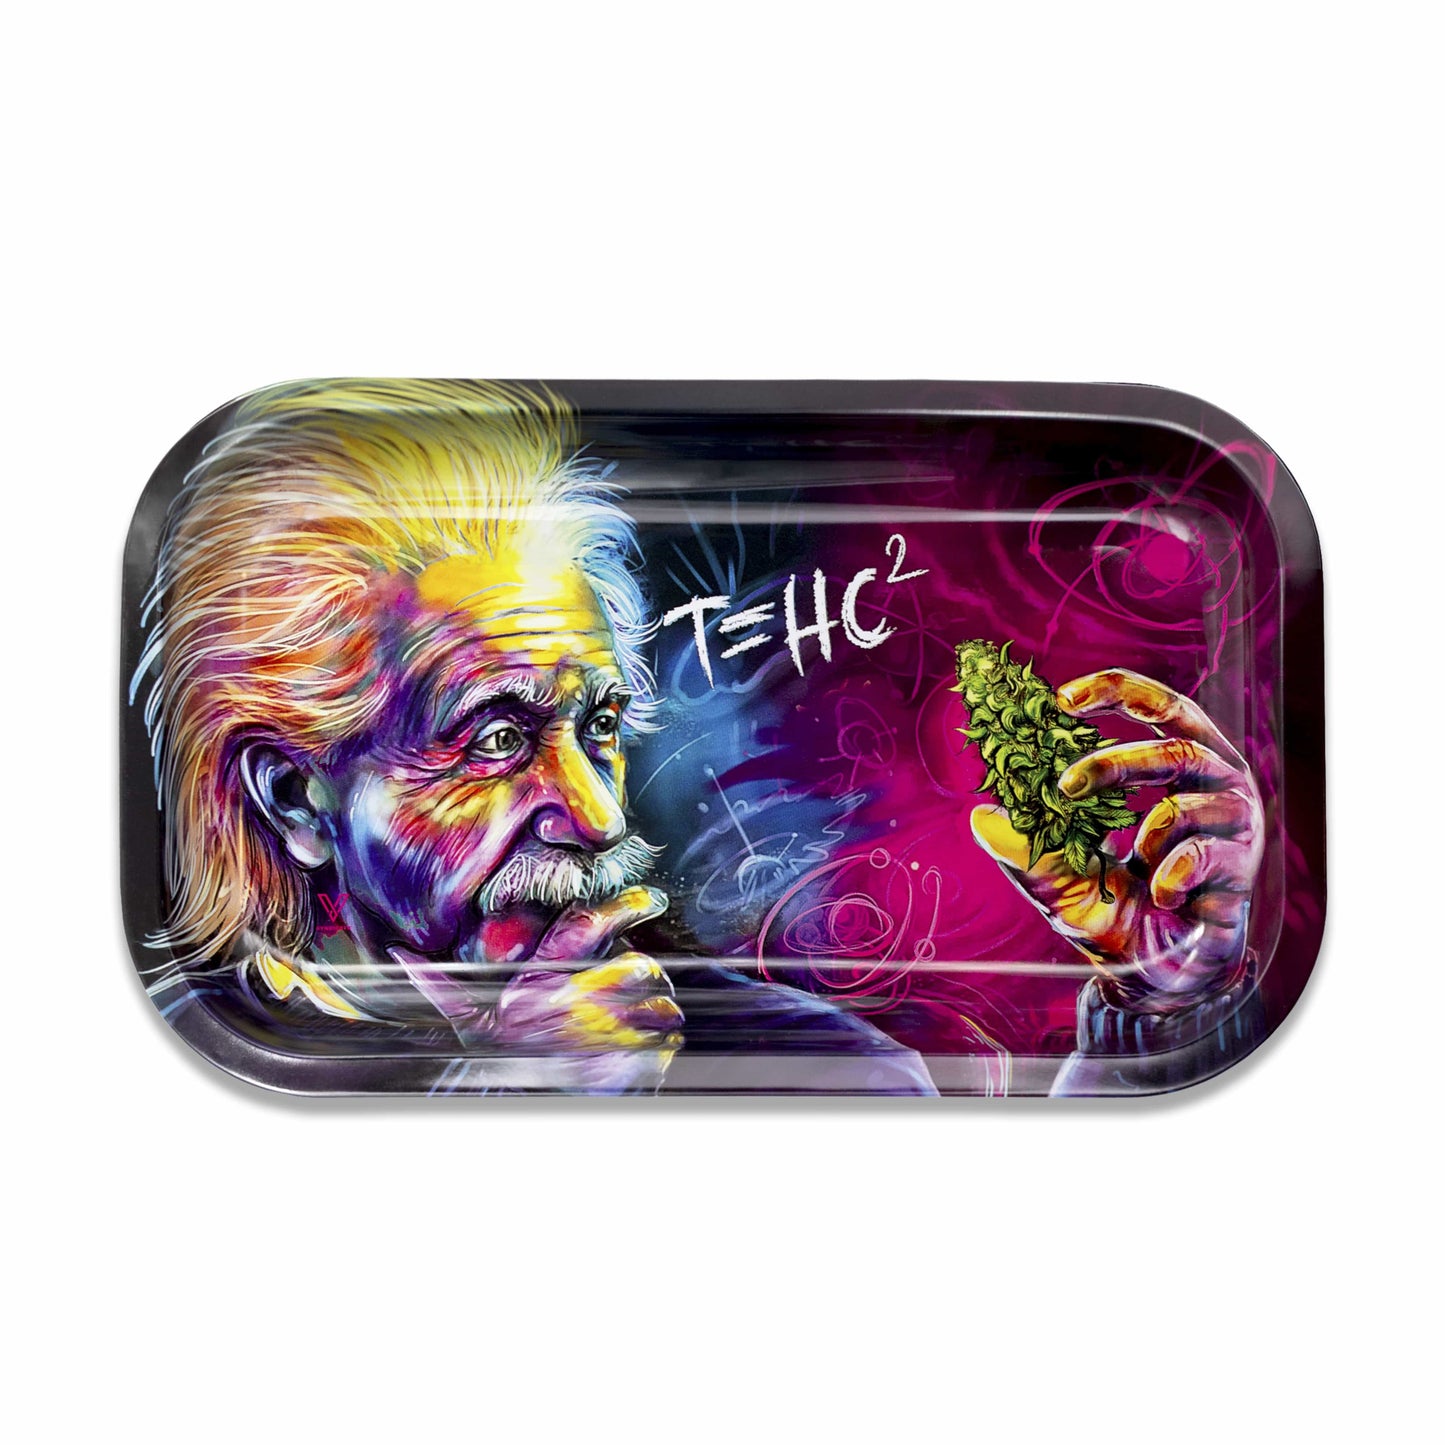 T=HC2 Einstein Metal Rollin' Tray